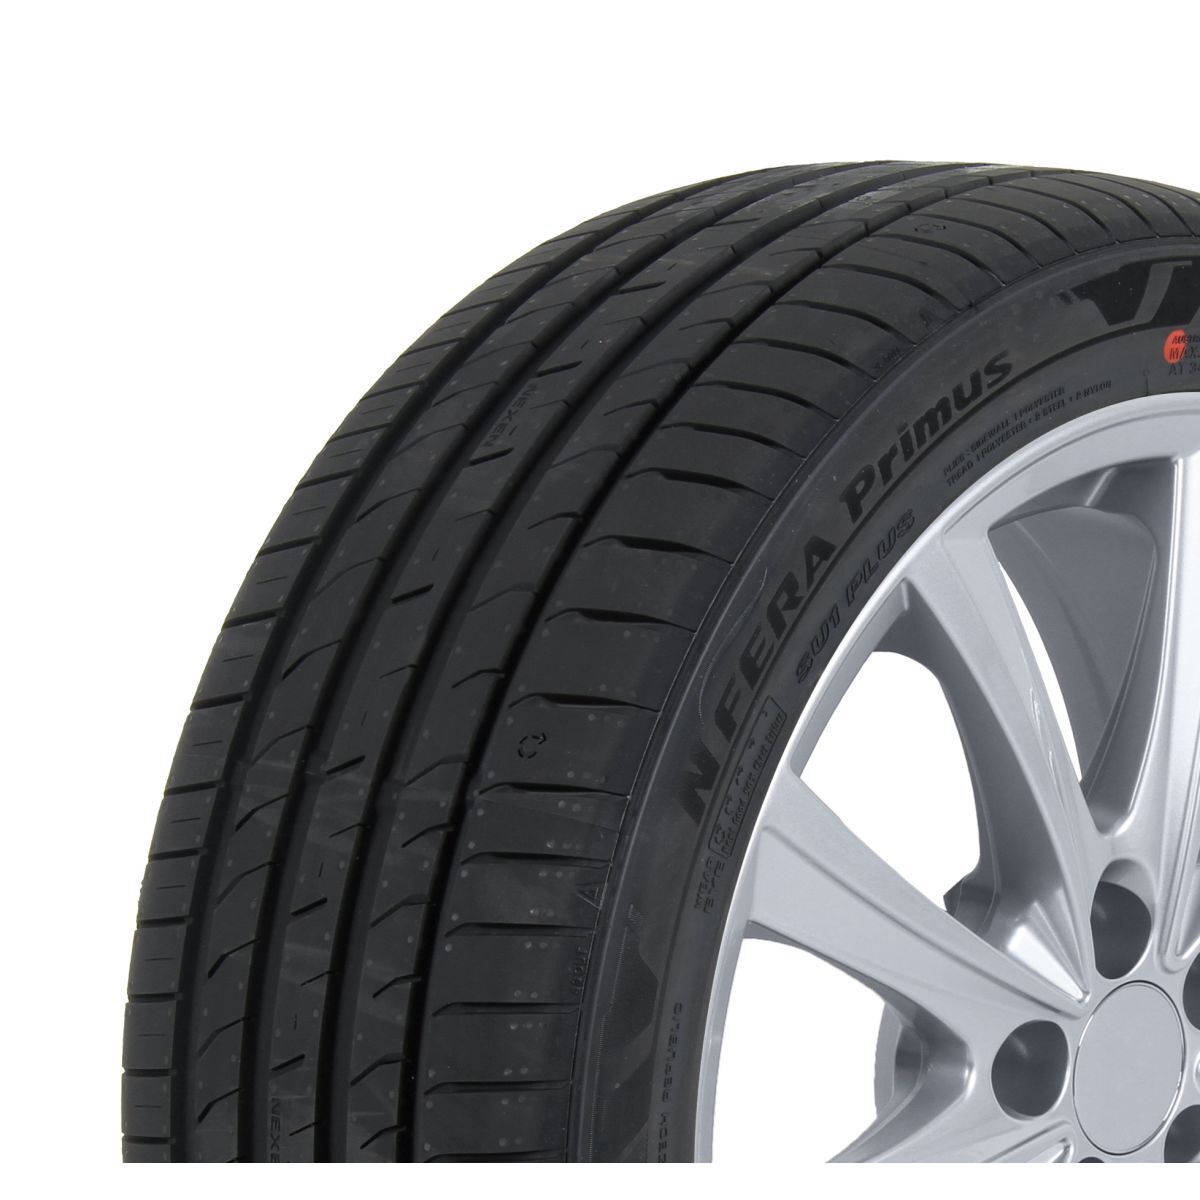 Neumáticos de verano NEXEN NFera Primus 205/50R17 XL 93Y